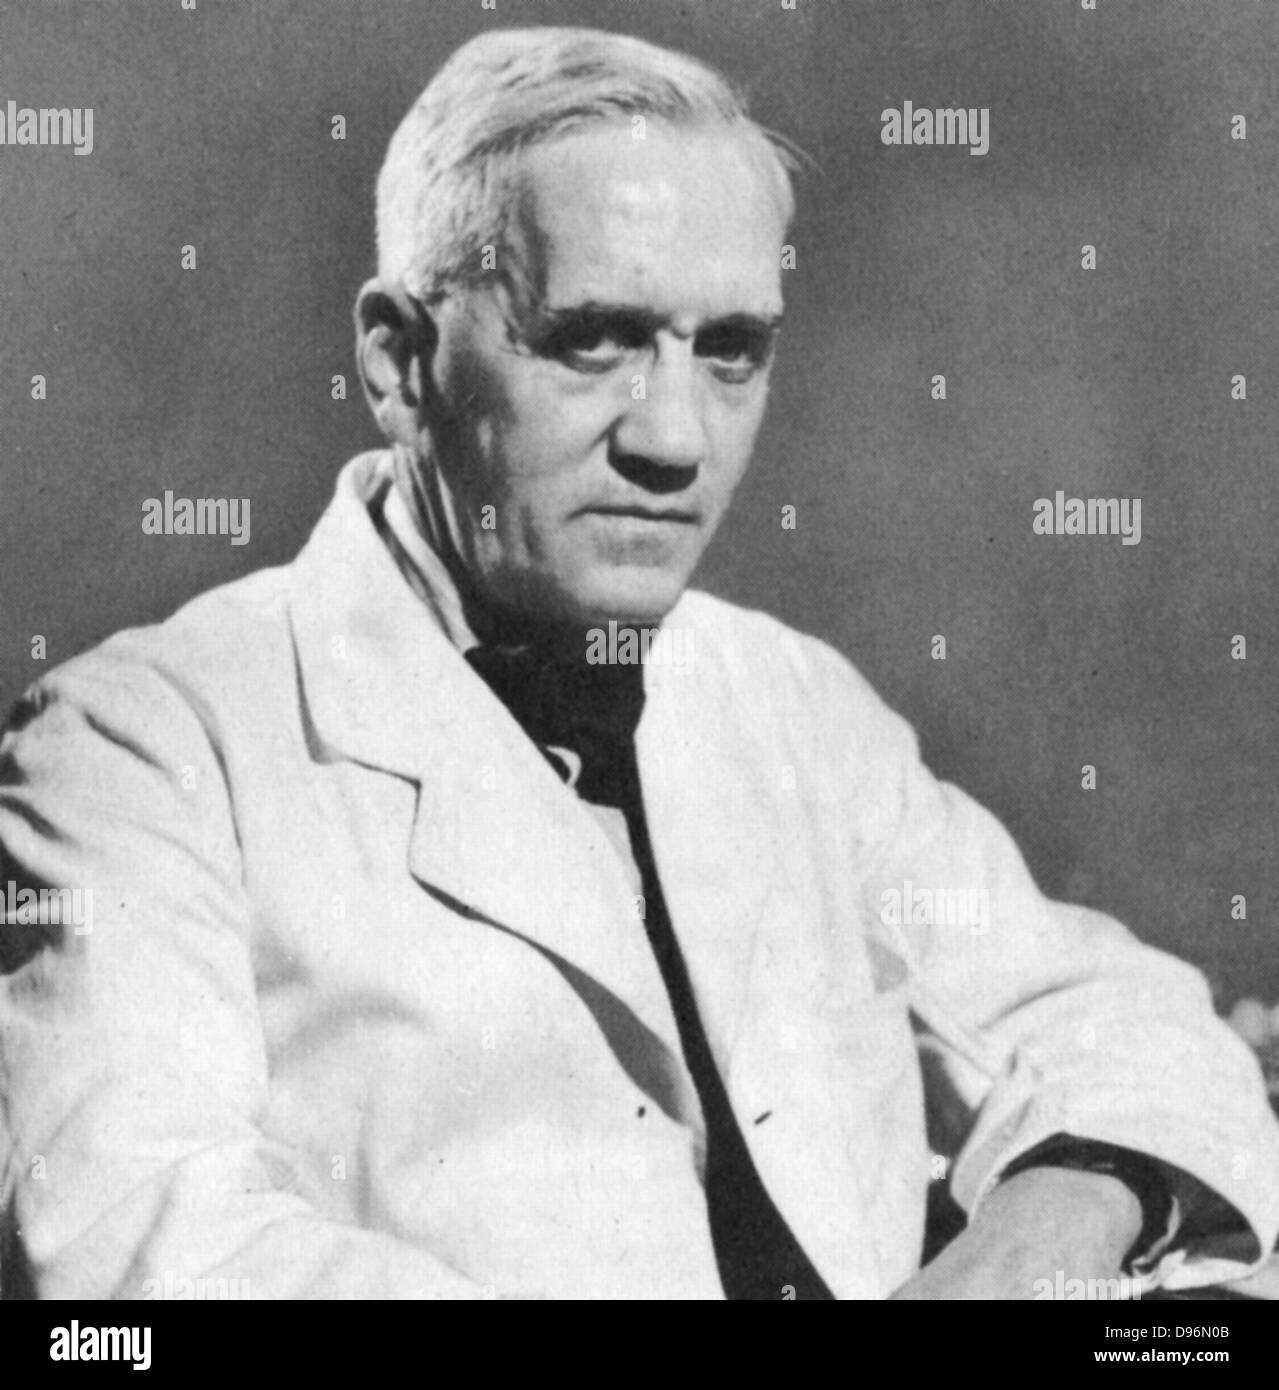 Alexander Fleming (1881-1955) bactériologiste écossais et le chirurgien. A découvert la pénicilline en 1928. Prix Nobel partagé avec Florey et Chain (1945). Banque D'Images